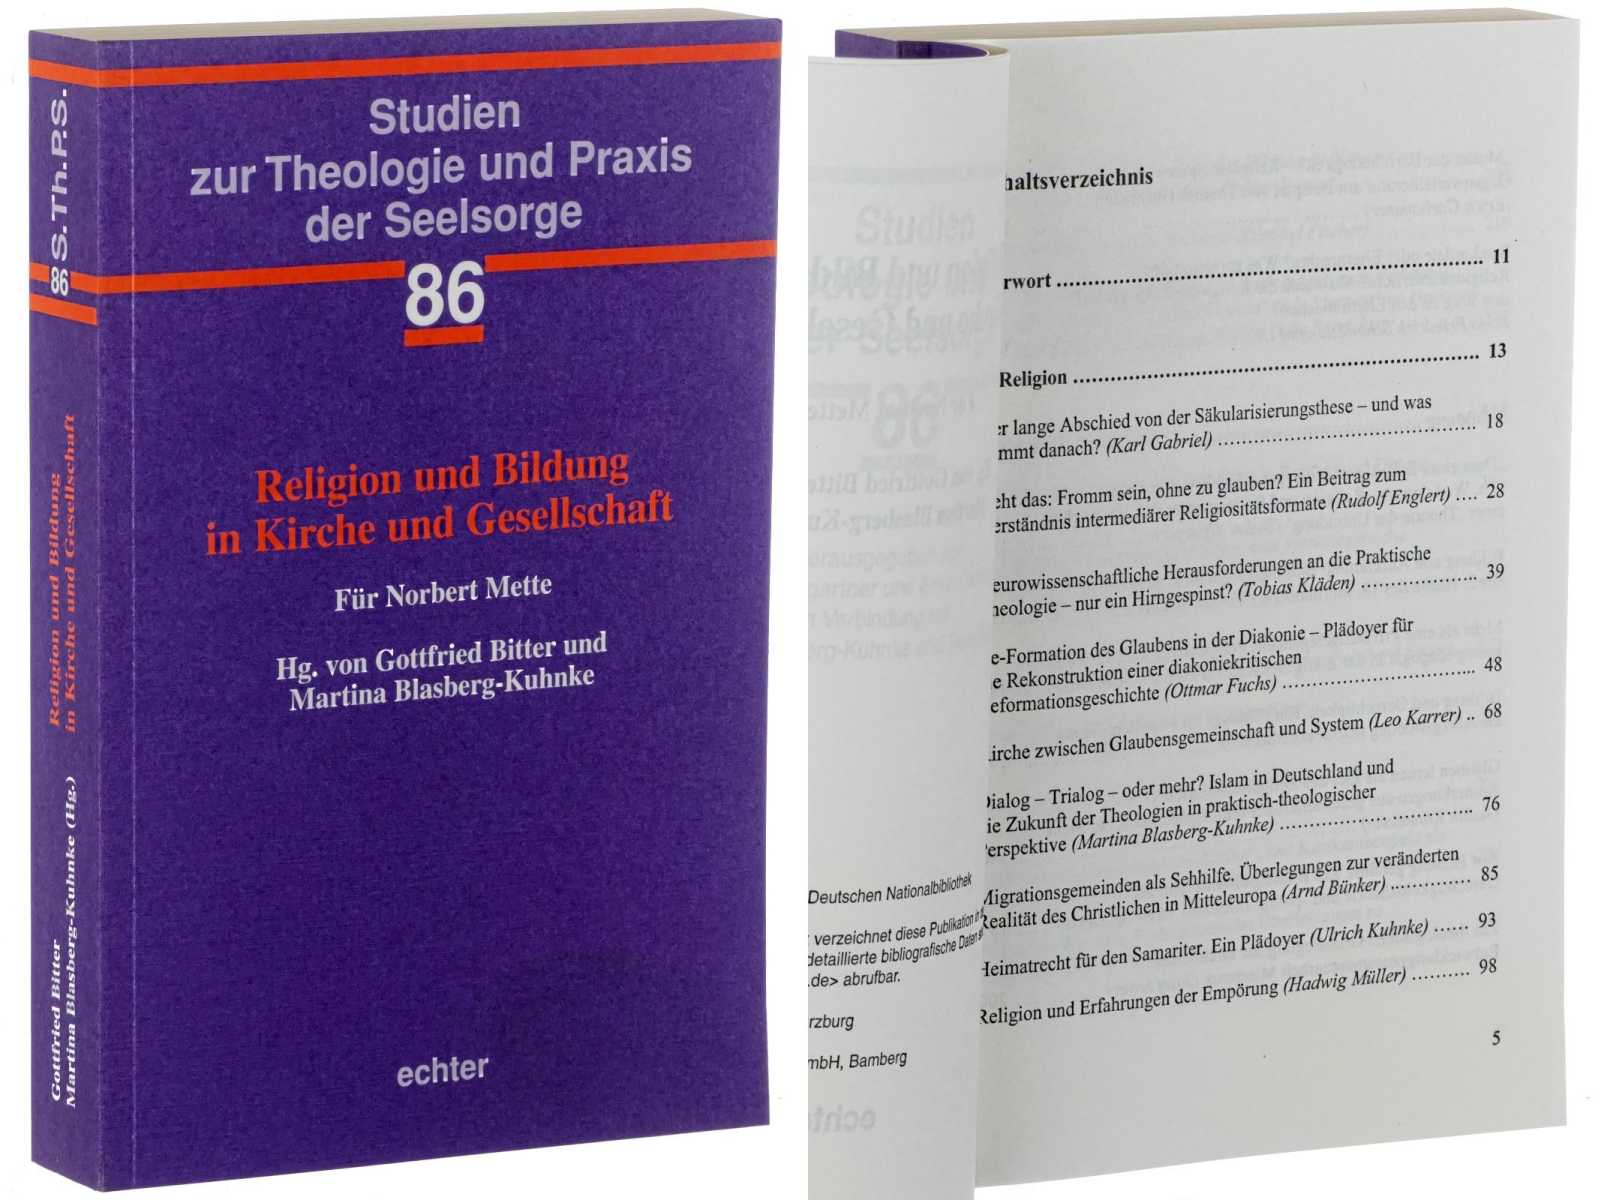 Bitter, Gottfried/ Martina Blasberg-Kuhnke (Hg):  Religion und Bildung in Kirche und Gesellschaft. Für Norbert Mette. 